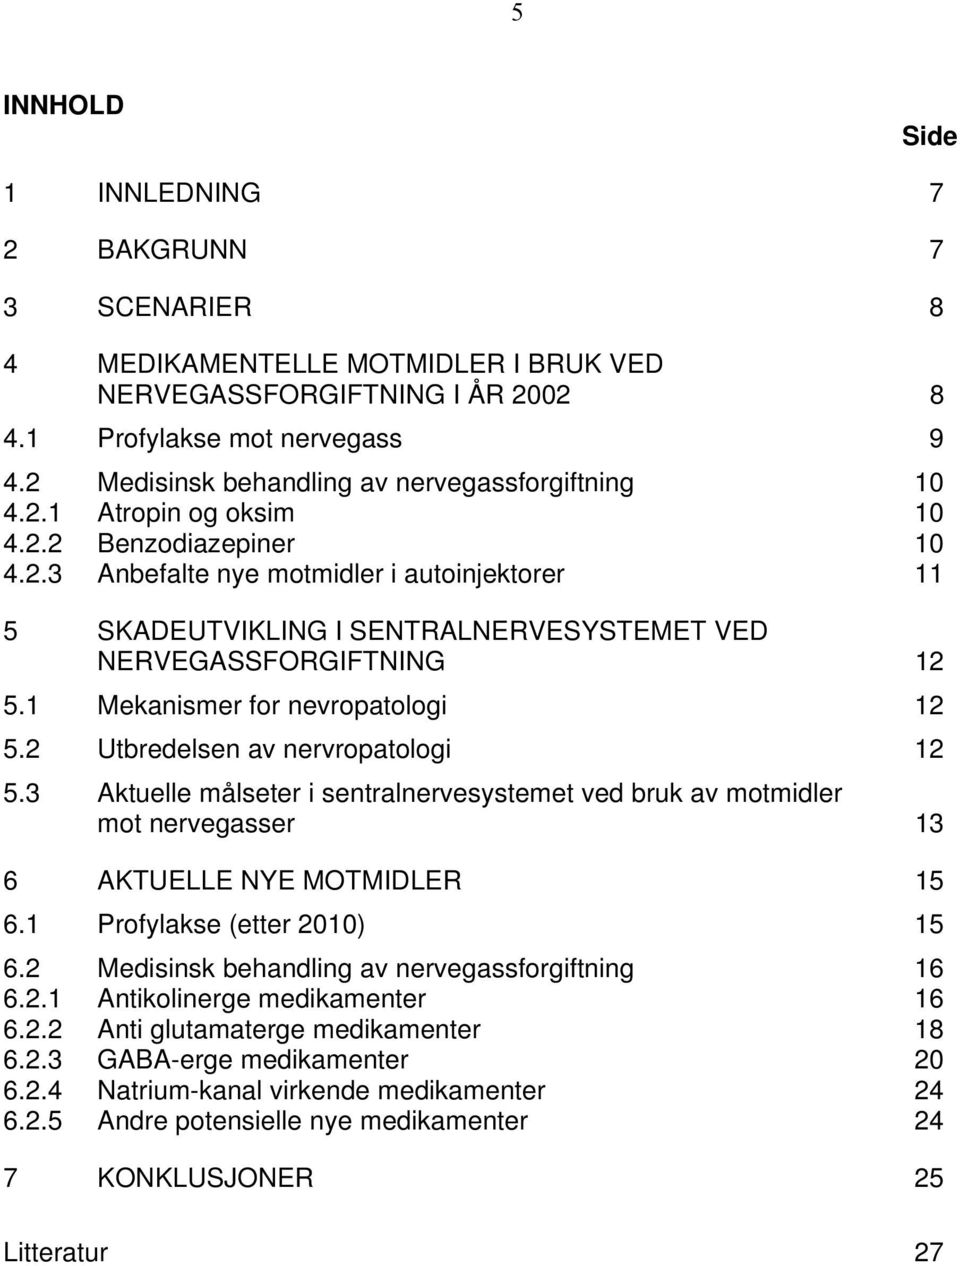 1 Mekanismer for nevropatologi 12 5.2 Utbredelsen av nervropatologi 12 5.3 Aktuelle målseter i sentralnervesystemet ved bruk av motmidler mot nervegasser 13 6 AKTUELLE NYE MOTMIDLER 15 6.